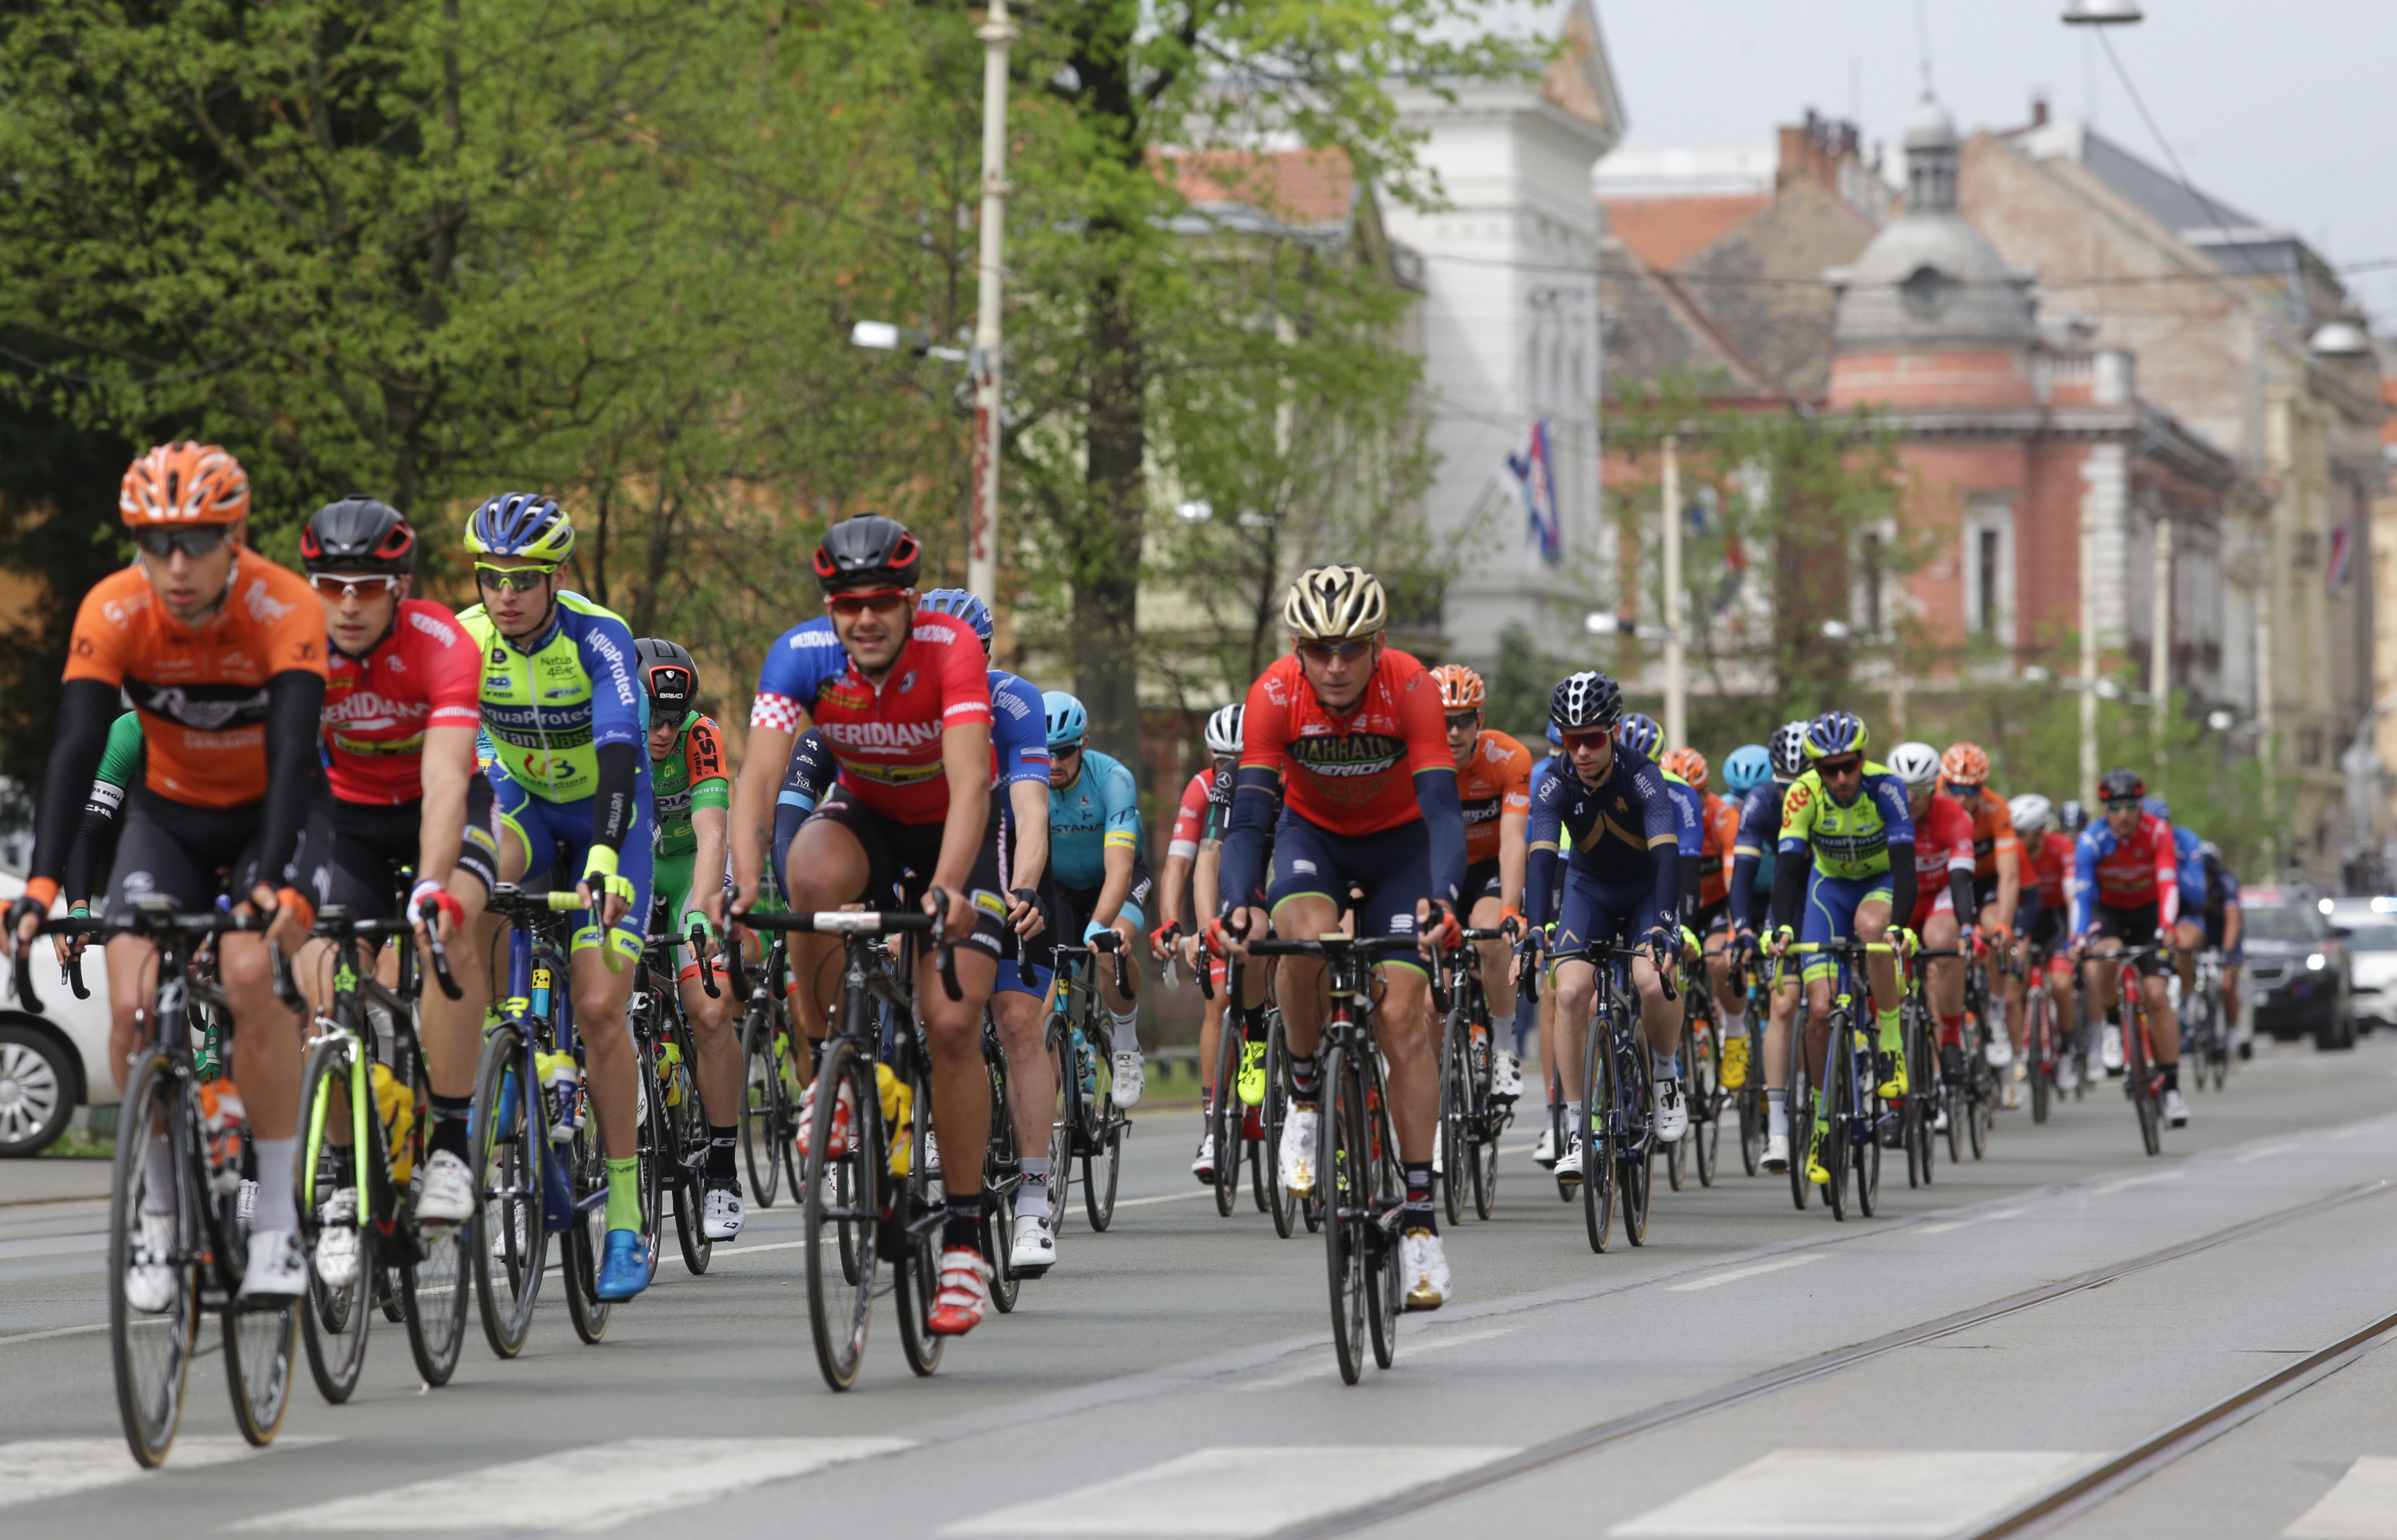 Osijek, 17.04.2018 - Èetvrta biciklistièka utrka "Tour of Croatia", koja se odrava od 17. do 24. travnja, krenula je u utorak u 11 sati iz Osijeka.
foto HINA/ ua